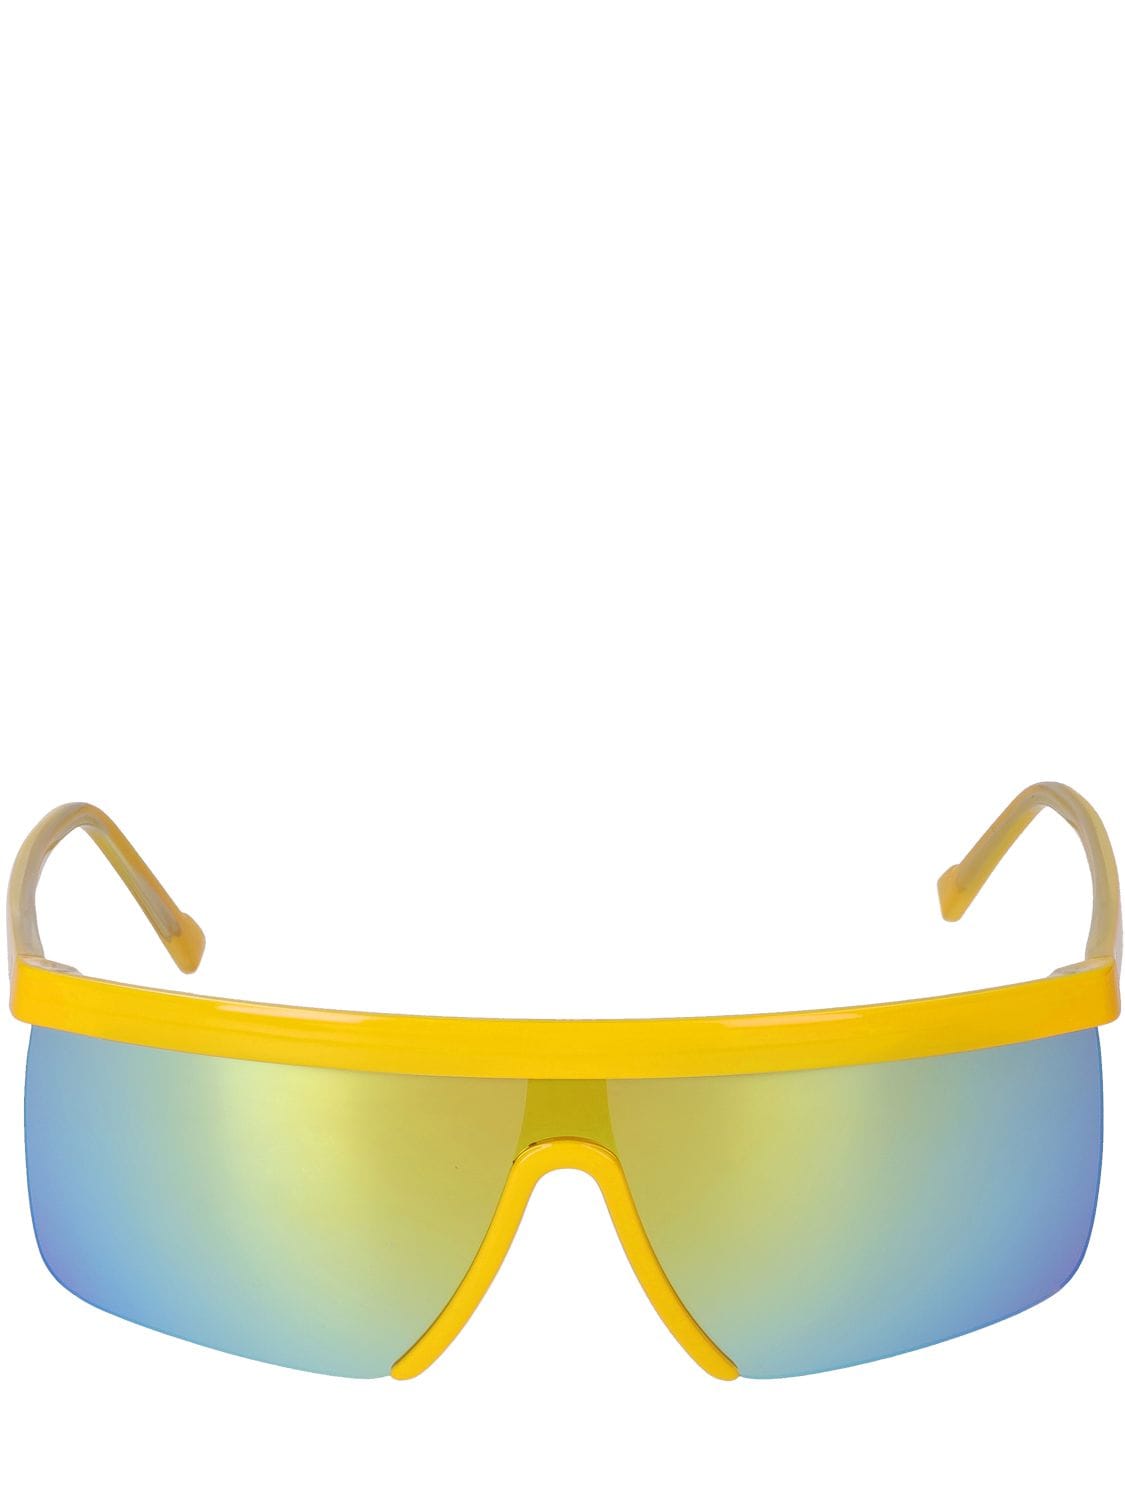 Giuseppe Di Morabito Mask Acetate Sunglasses W/ Mirror Lens In Yellow,mirror